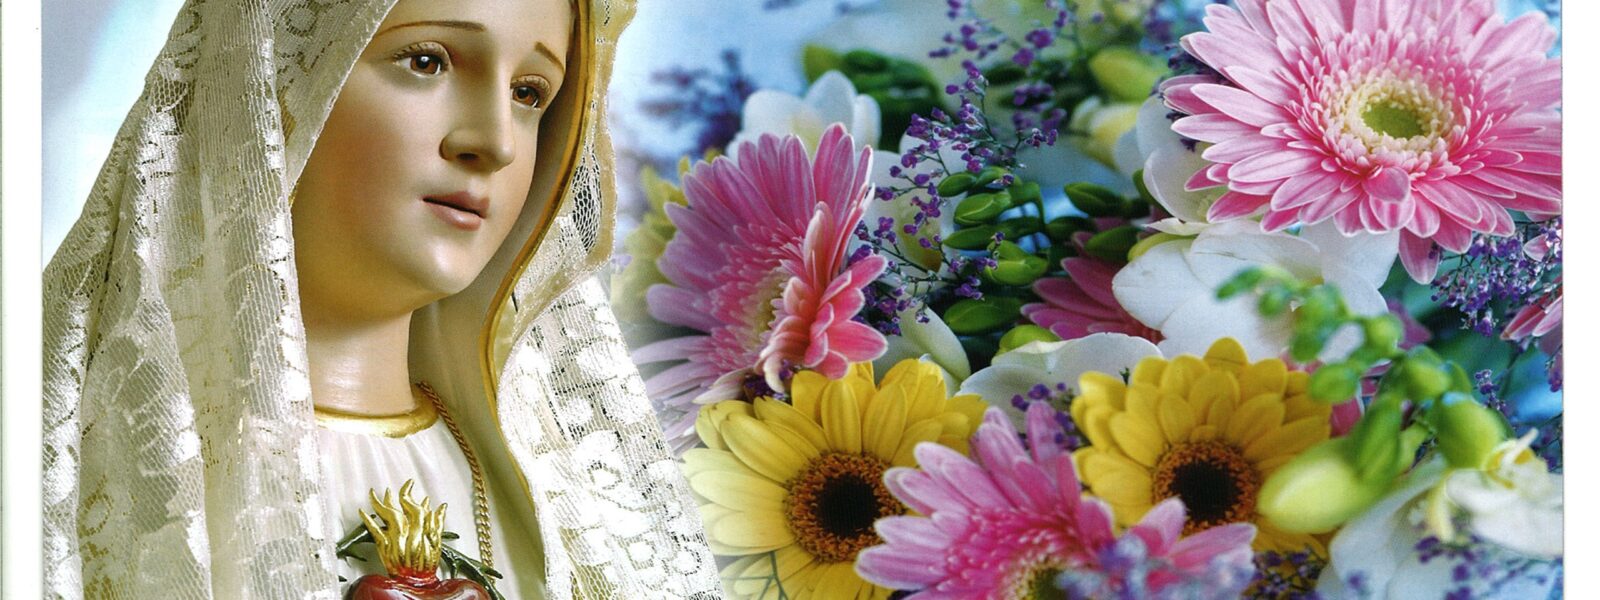 13 maja 1917 - pierwsze objawienie się Matki Bożej